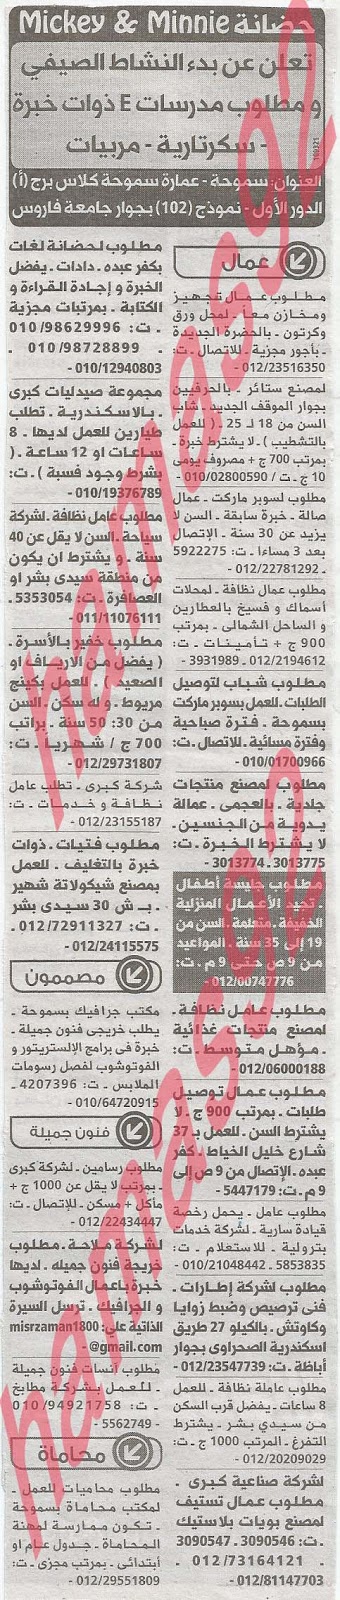 وظائف خالية فى جريدة الوسيط الاسكندرية الثلاثاء 14-05-2013 %D9%88+%D8%B3+%D8%B3+5